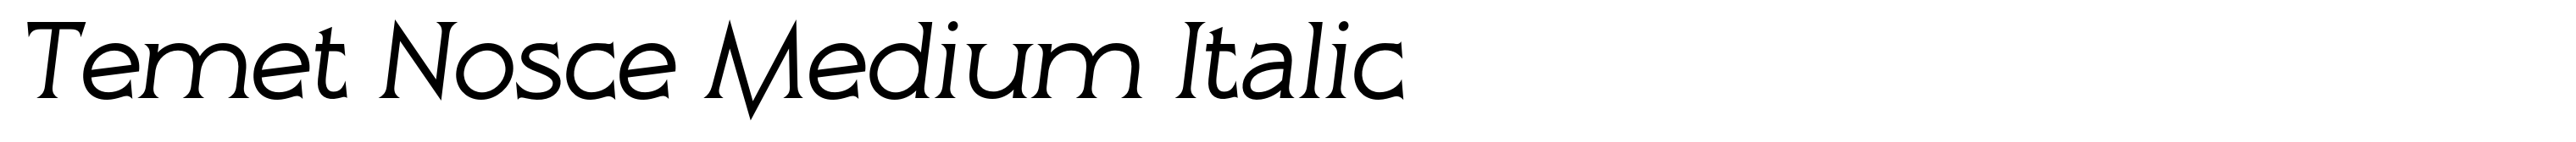 Temet Nosce Medium Italic